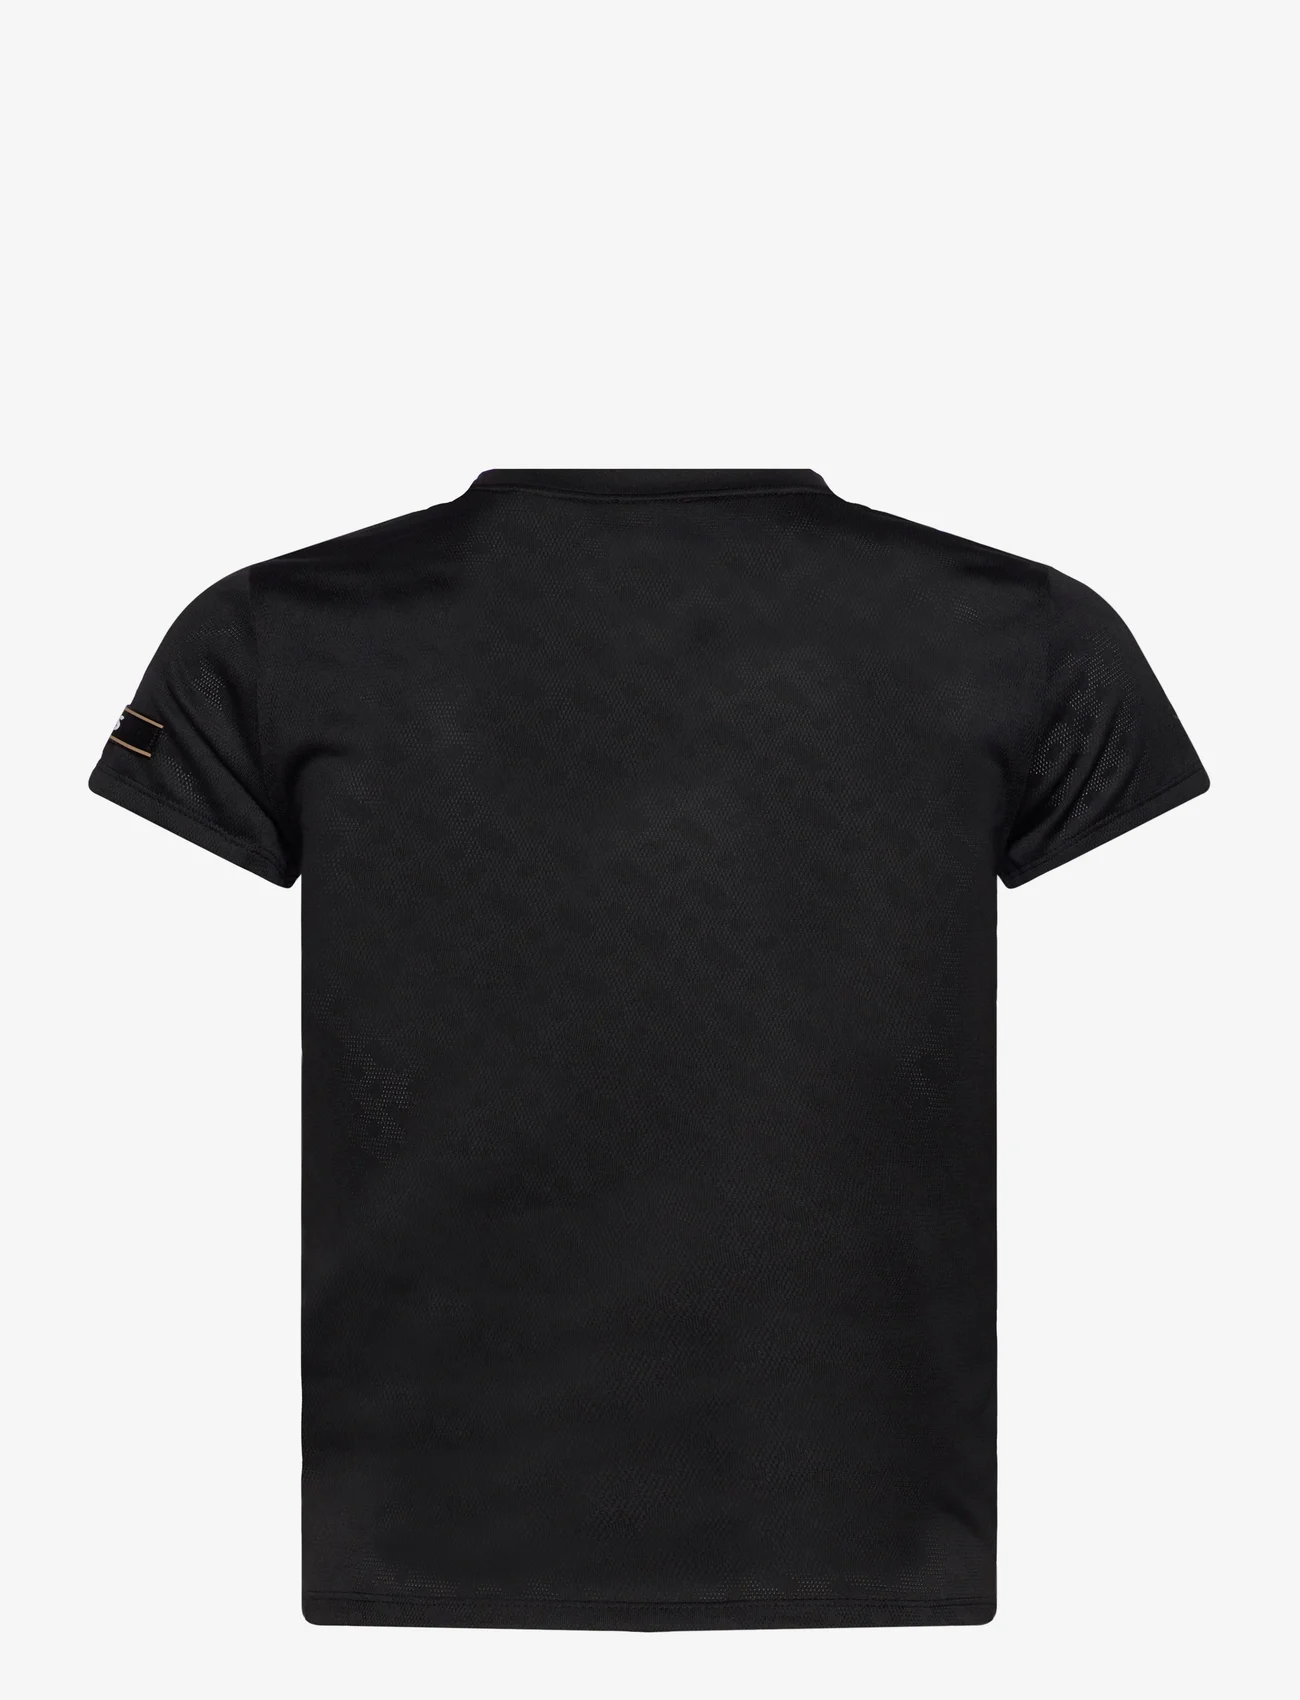 BOSS - ELOGOBOSS_ALICA - t-shirts & tops - black - 1